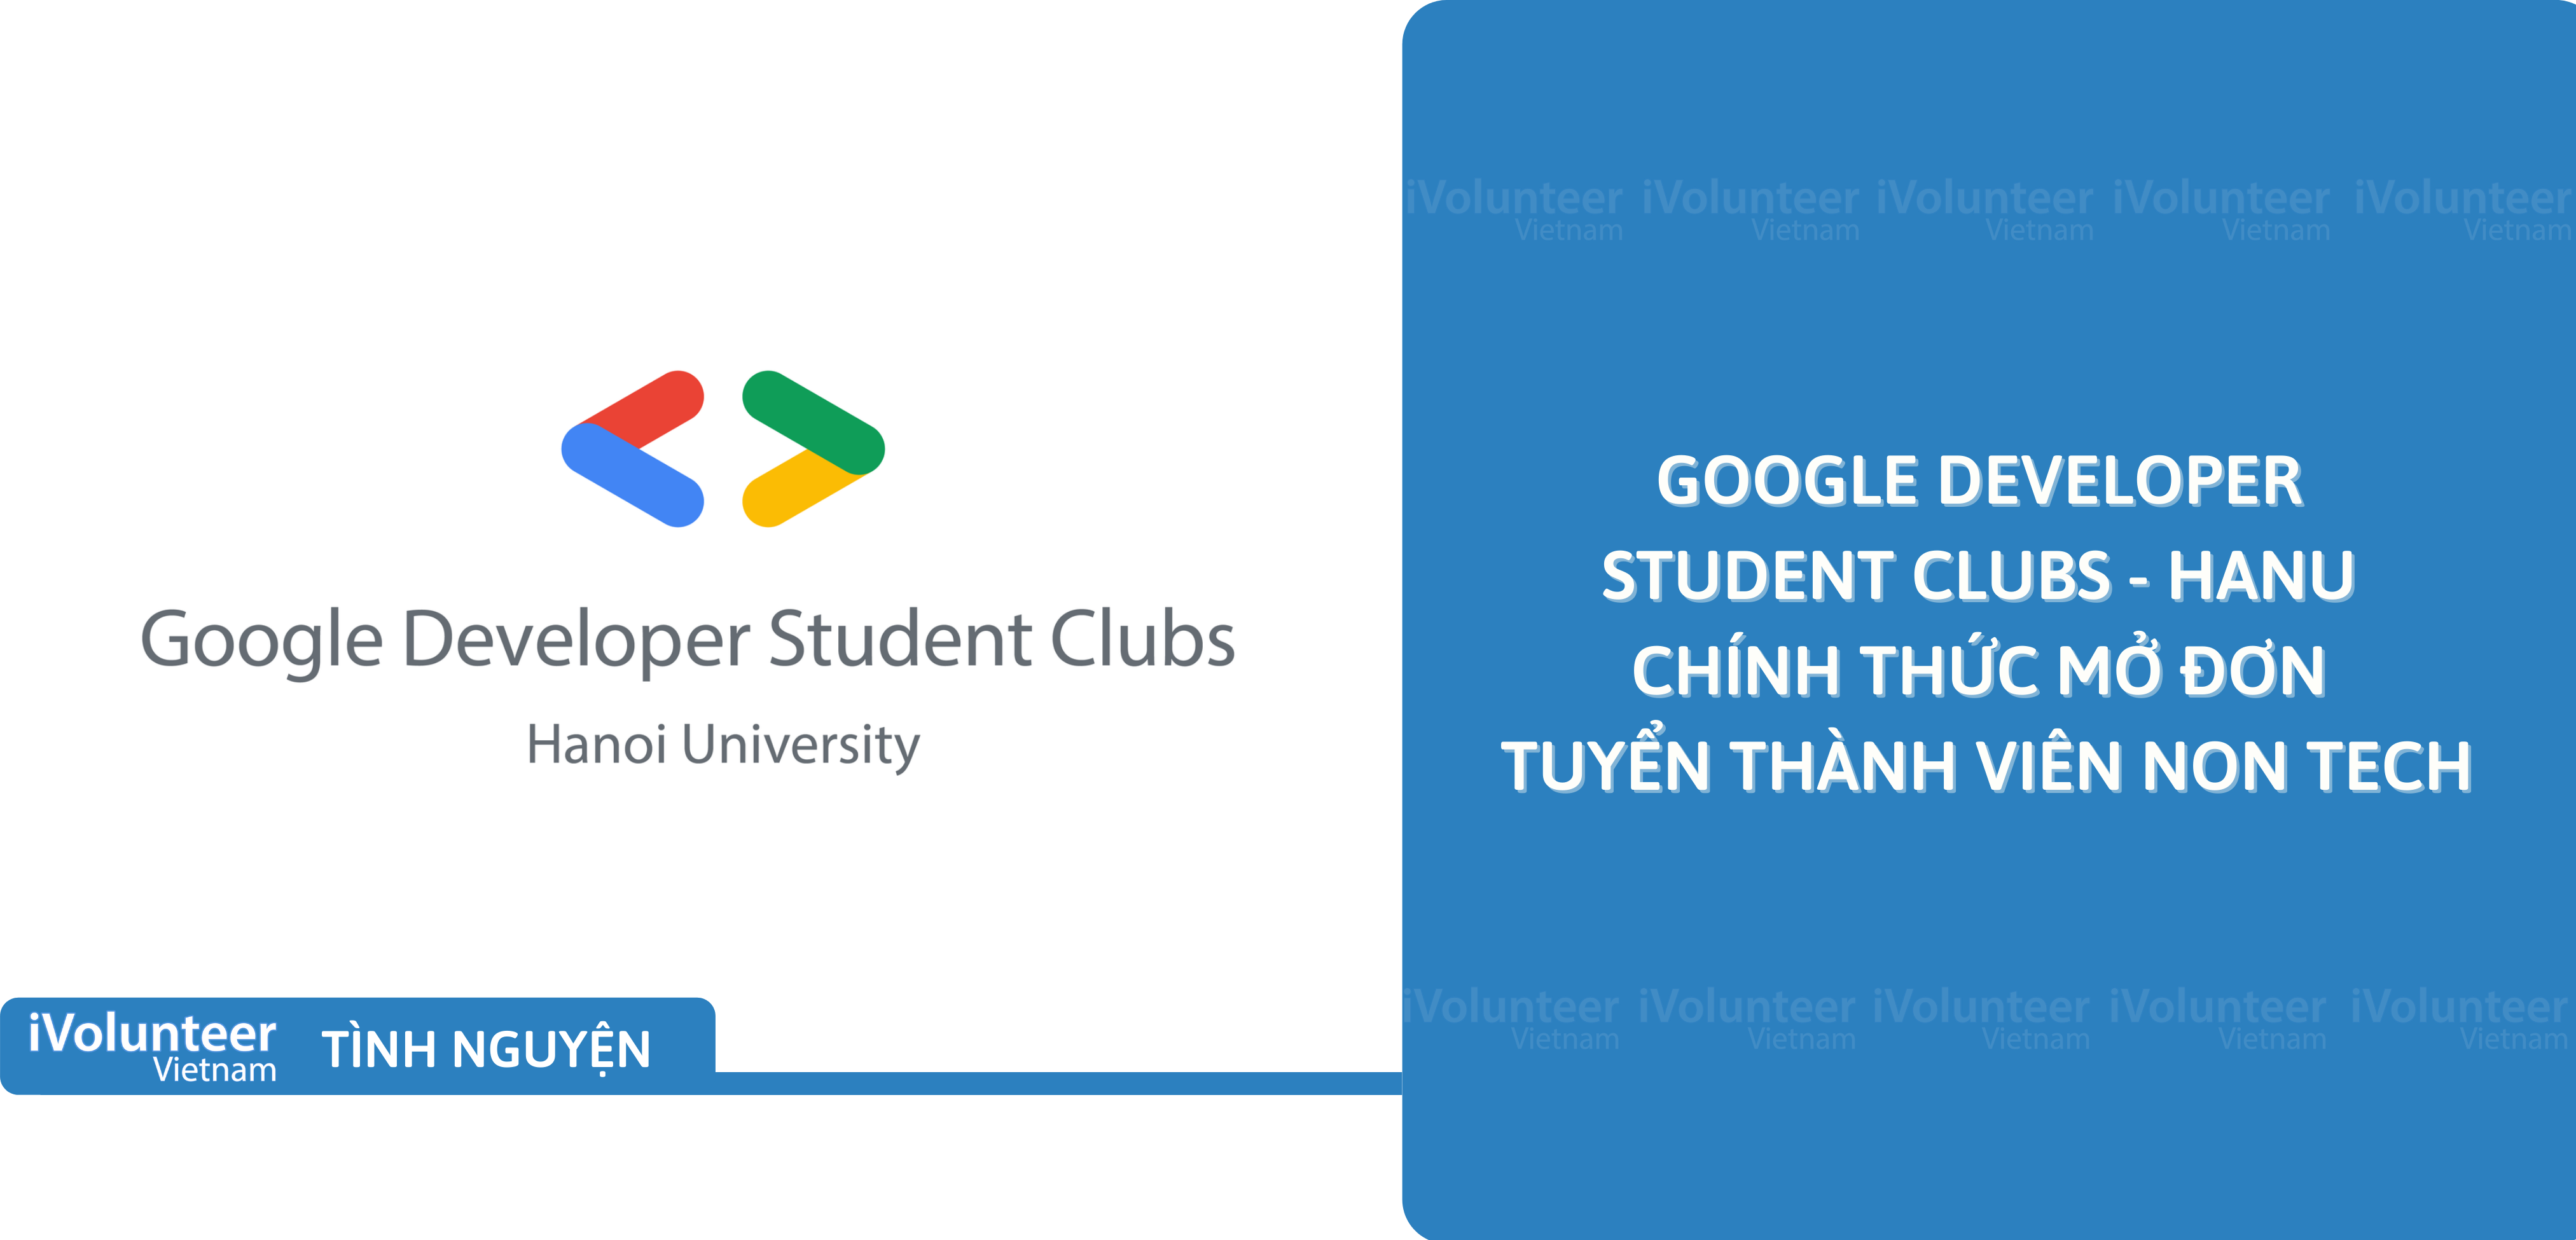 [HN] Google Developer Student Clubs - HANU Chính Thức Mở Đơn Tuyển Thành Viên Non Tech